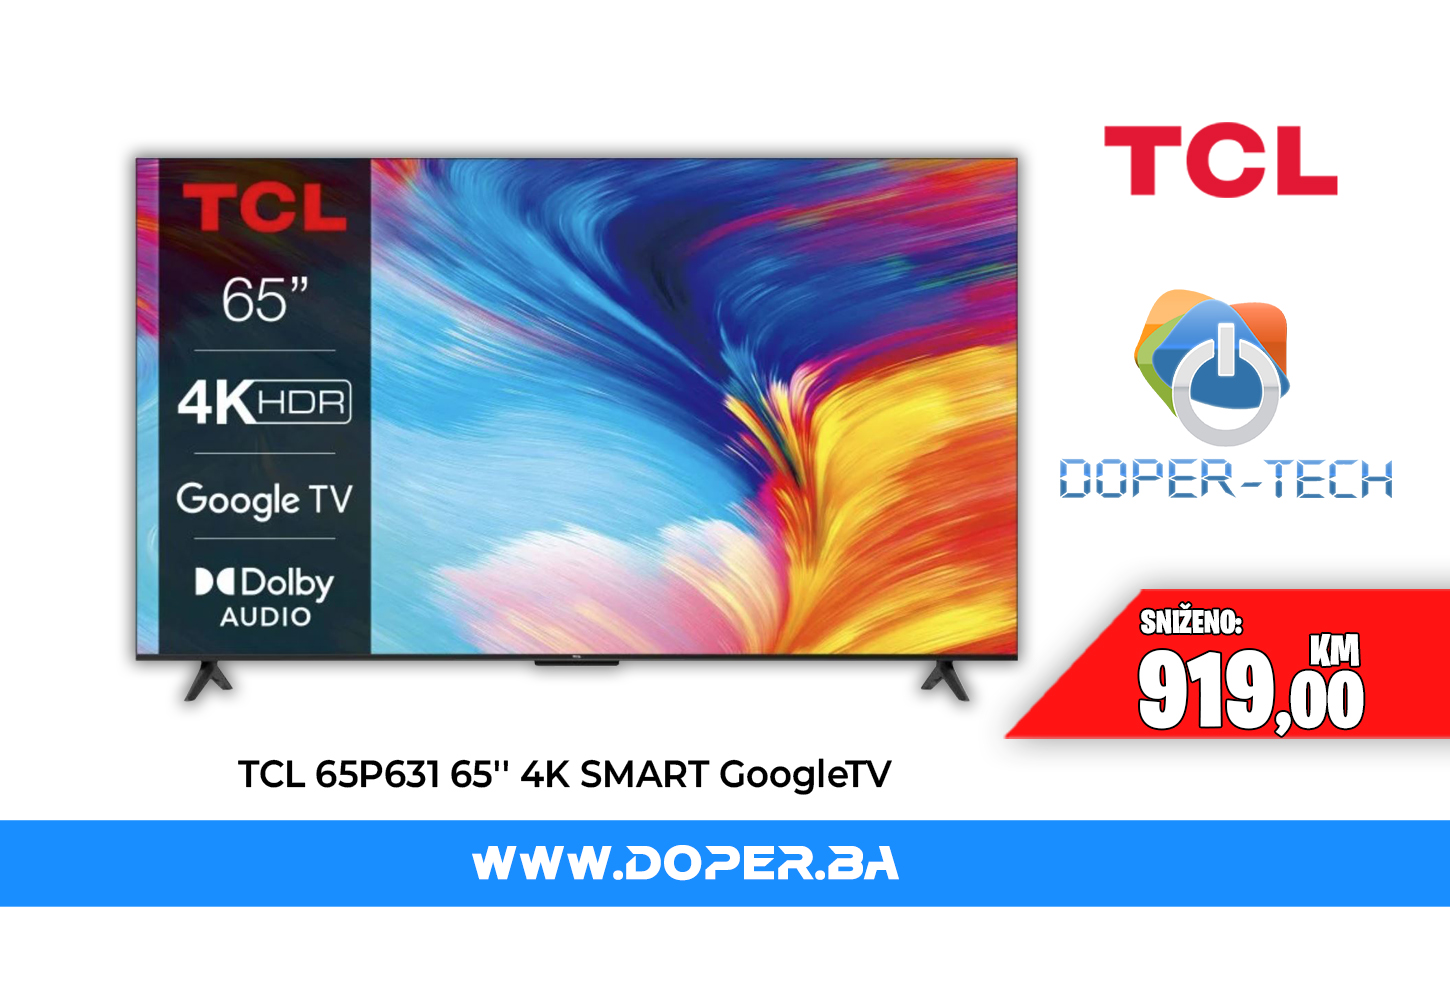 TCL 65P631 65 LED UltraHD 4K Google TV